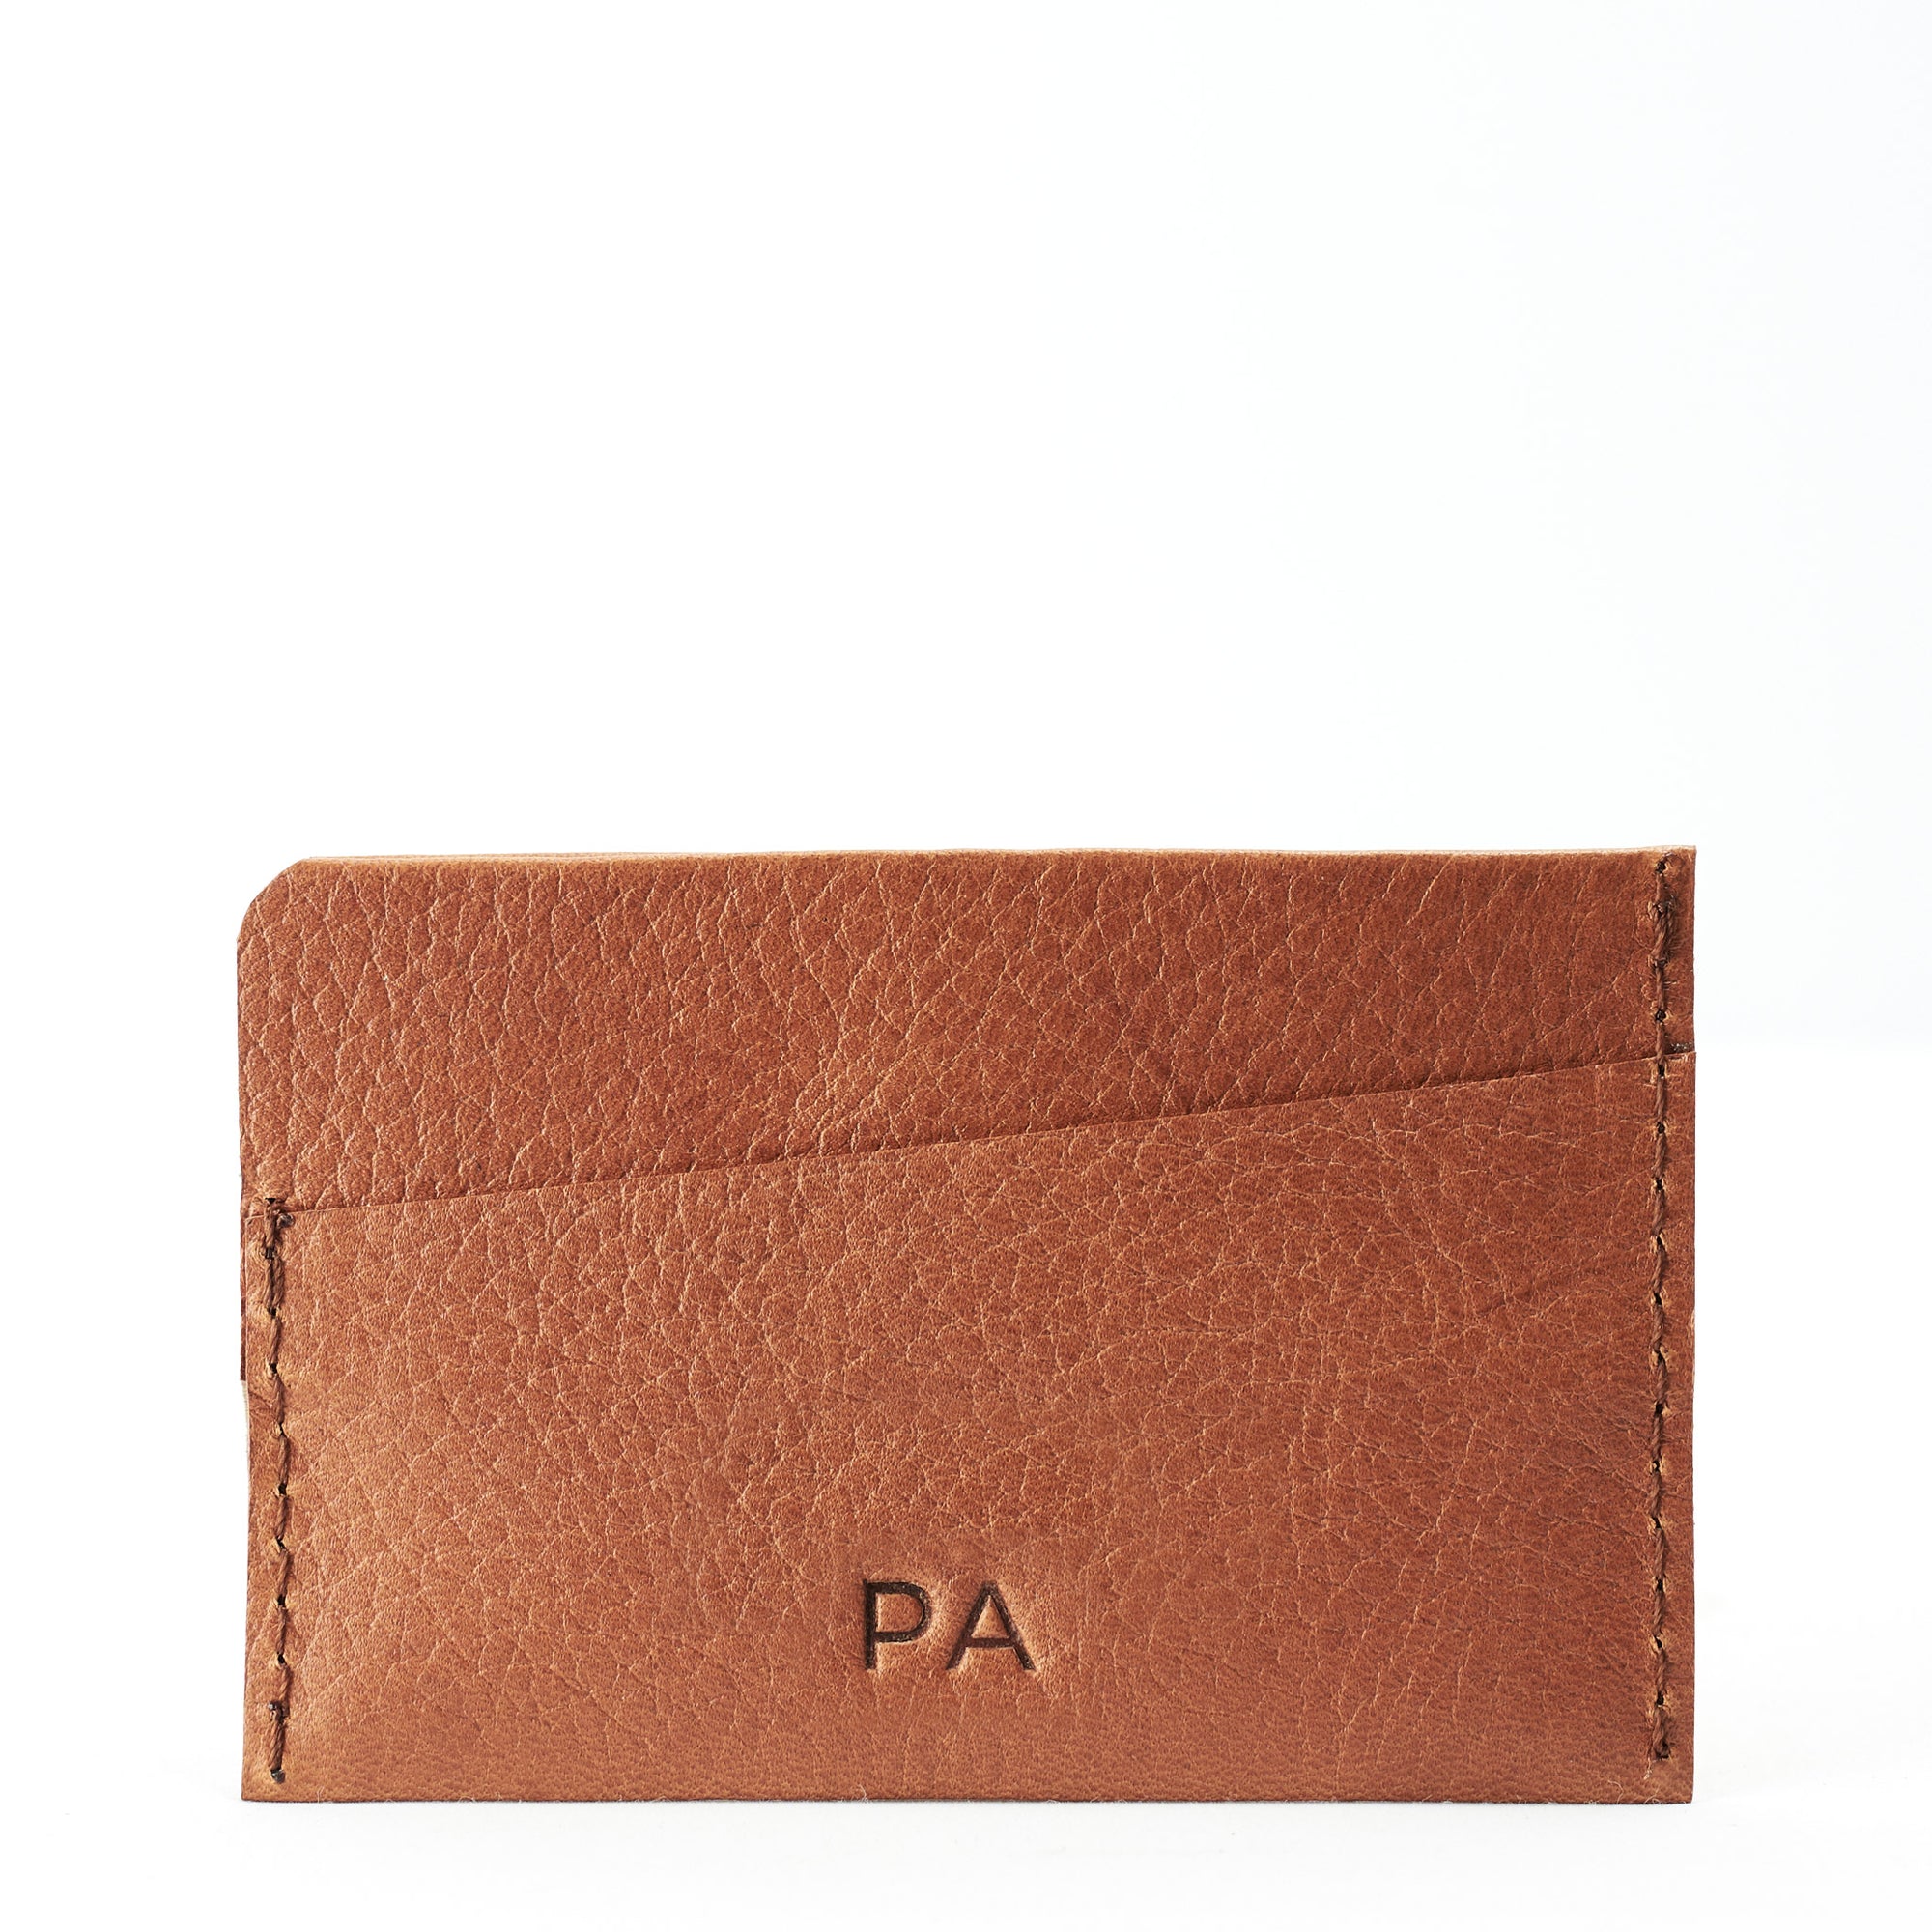 Custom engraving. Brown leather card holder, gifts for men, minimalist designer cards wallet